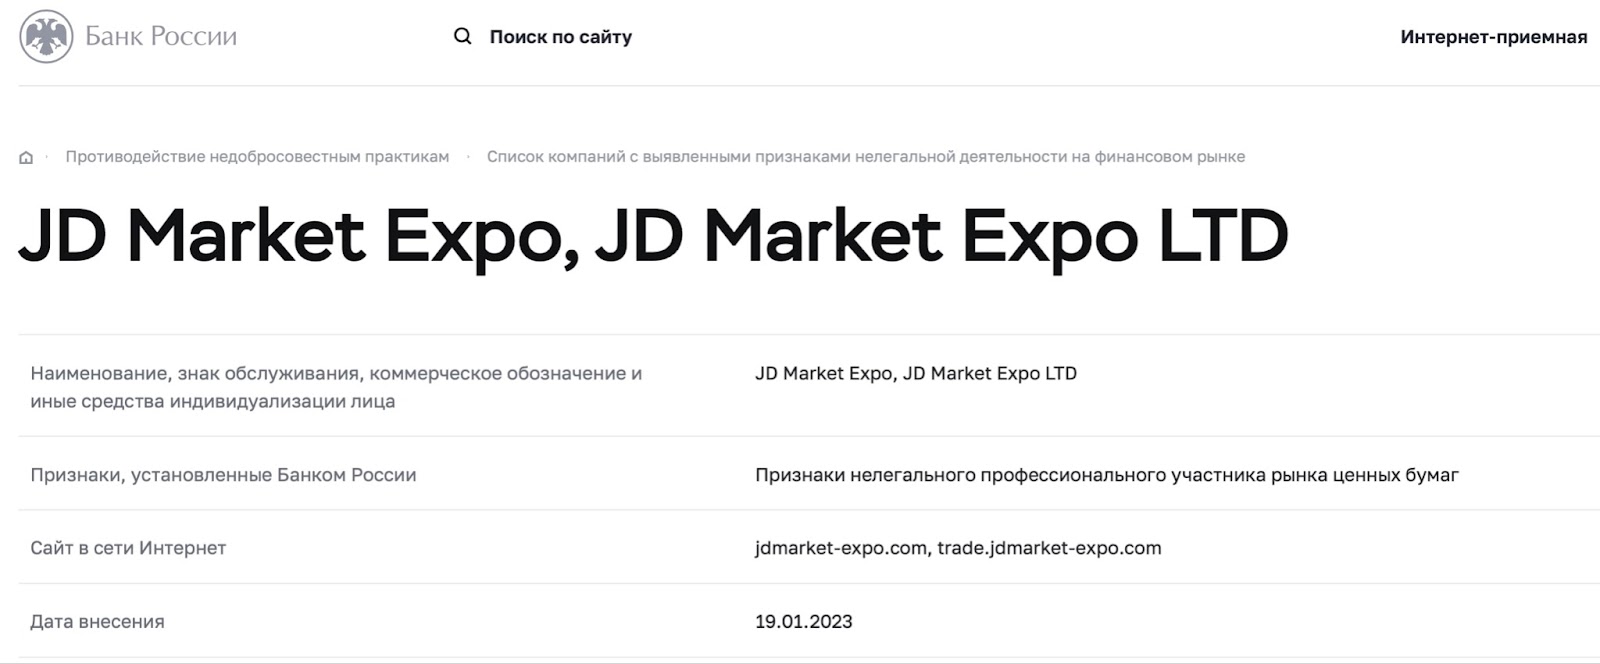 JD Market Expo: отзывы клиентов о работе компании в 2023 году